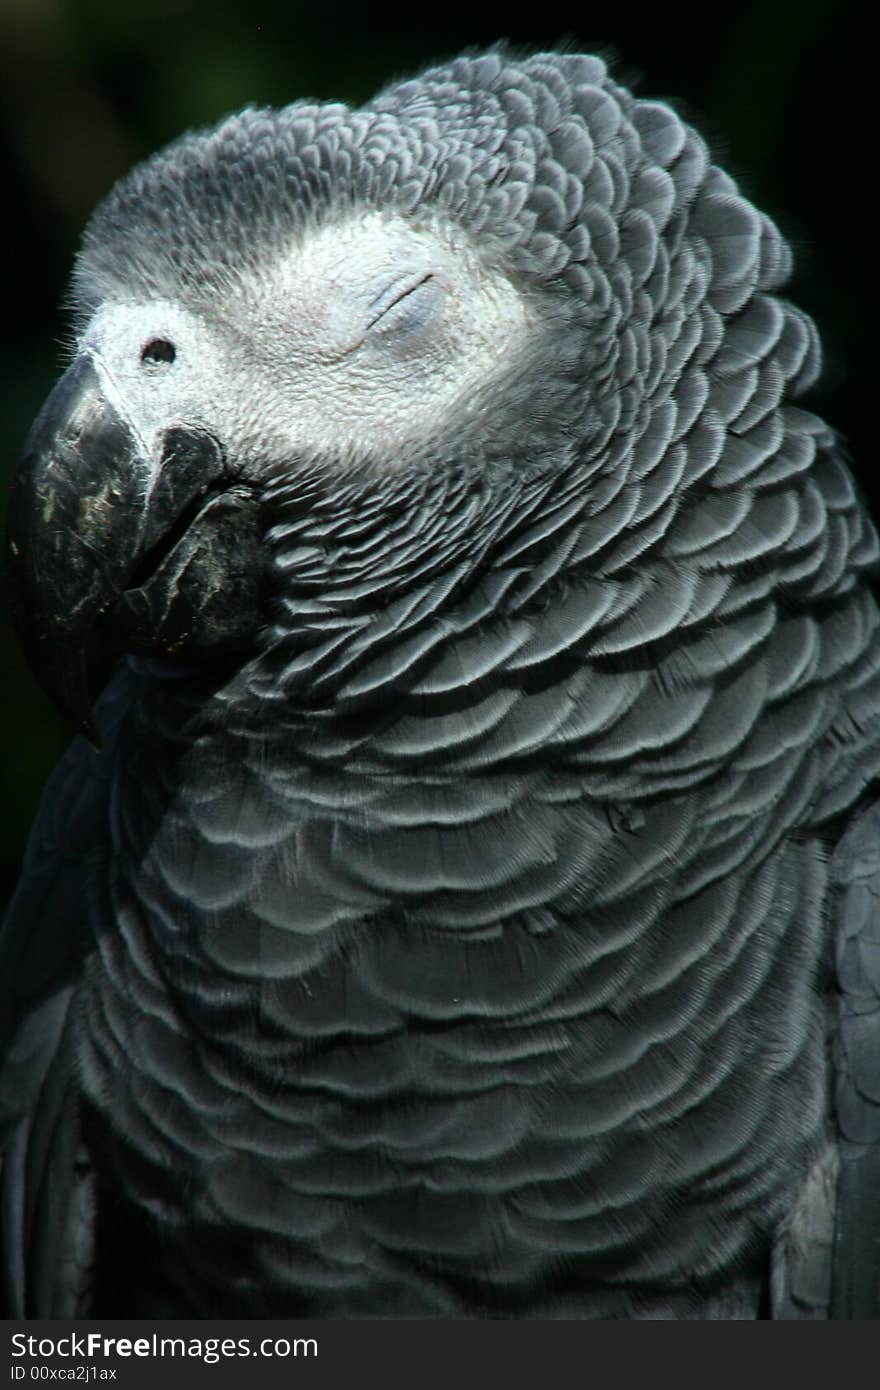 Pet Grey Parrot, photographed at bird sanctuary. Pet Grey Parrot, photographed at bird sanctuary.